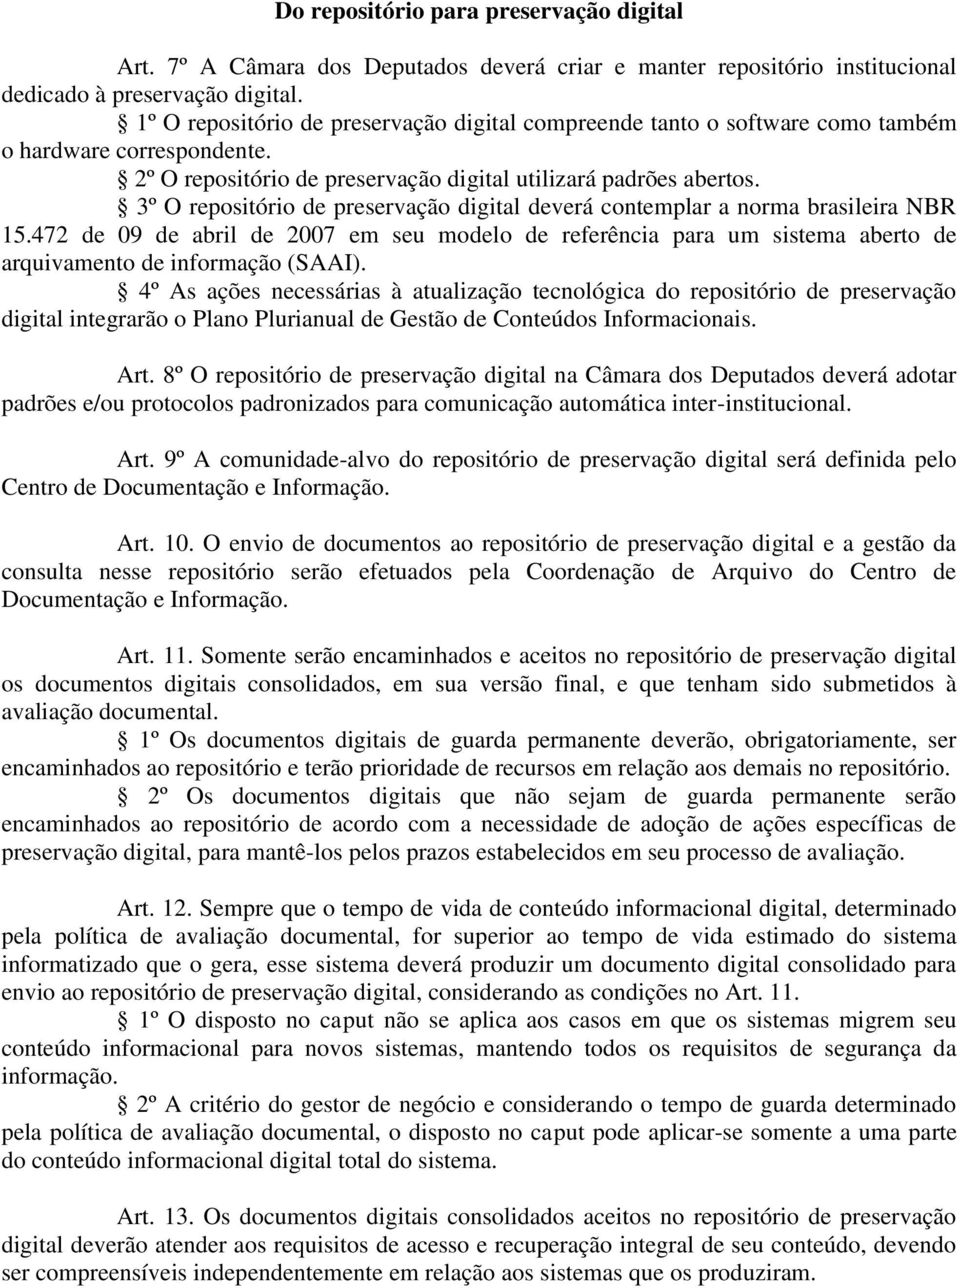 3º O repositório de preservação digital deverá contemplar a norma brasileira NBR 15.472 de 09 de abril de 2007 em seu modelo de referência para um sistema aberto de arquivamento de informação (SAAI).